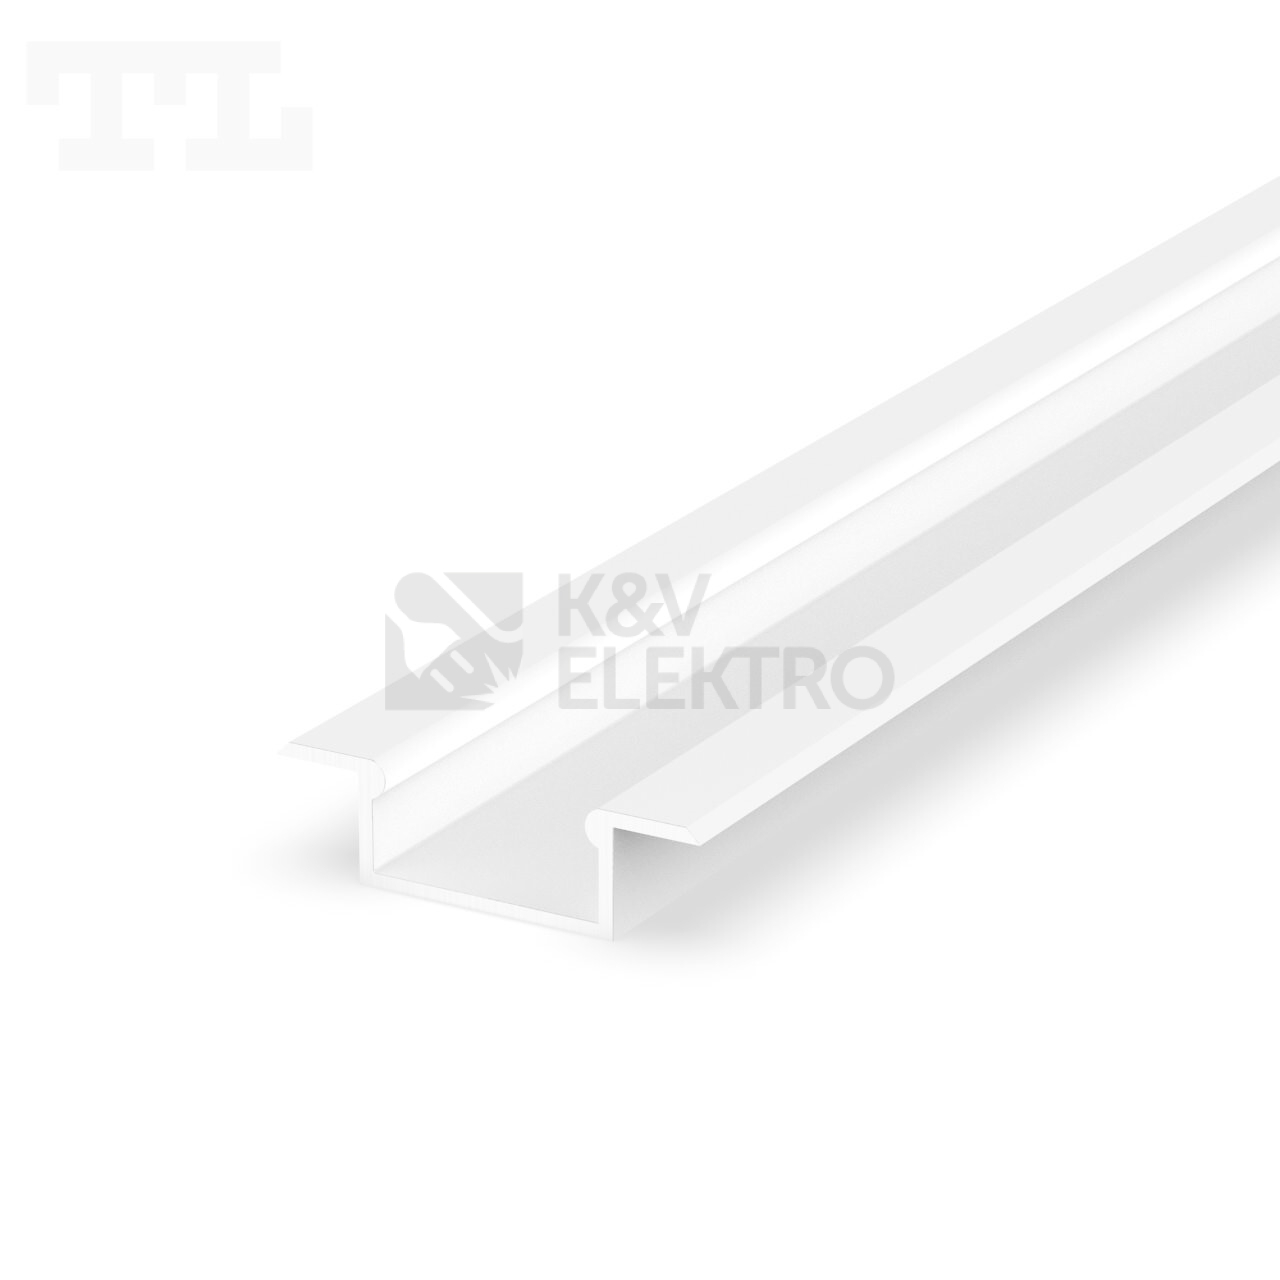 Obrázek produktu Vestavný hliníkový profil, černý 093114 0